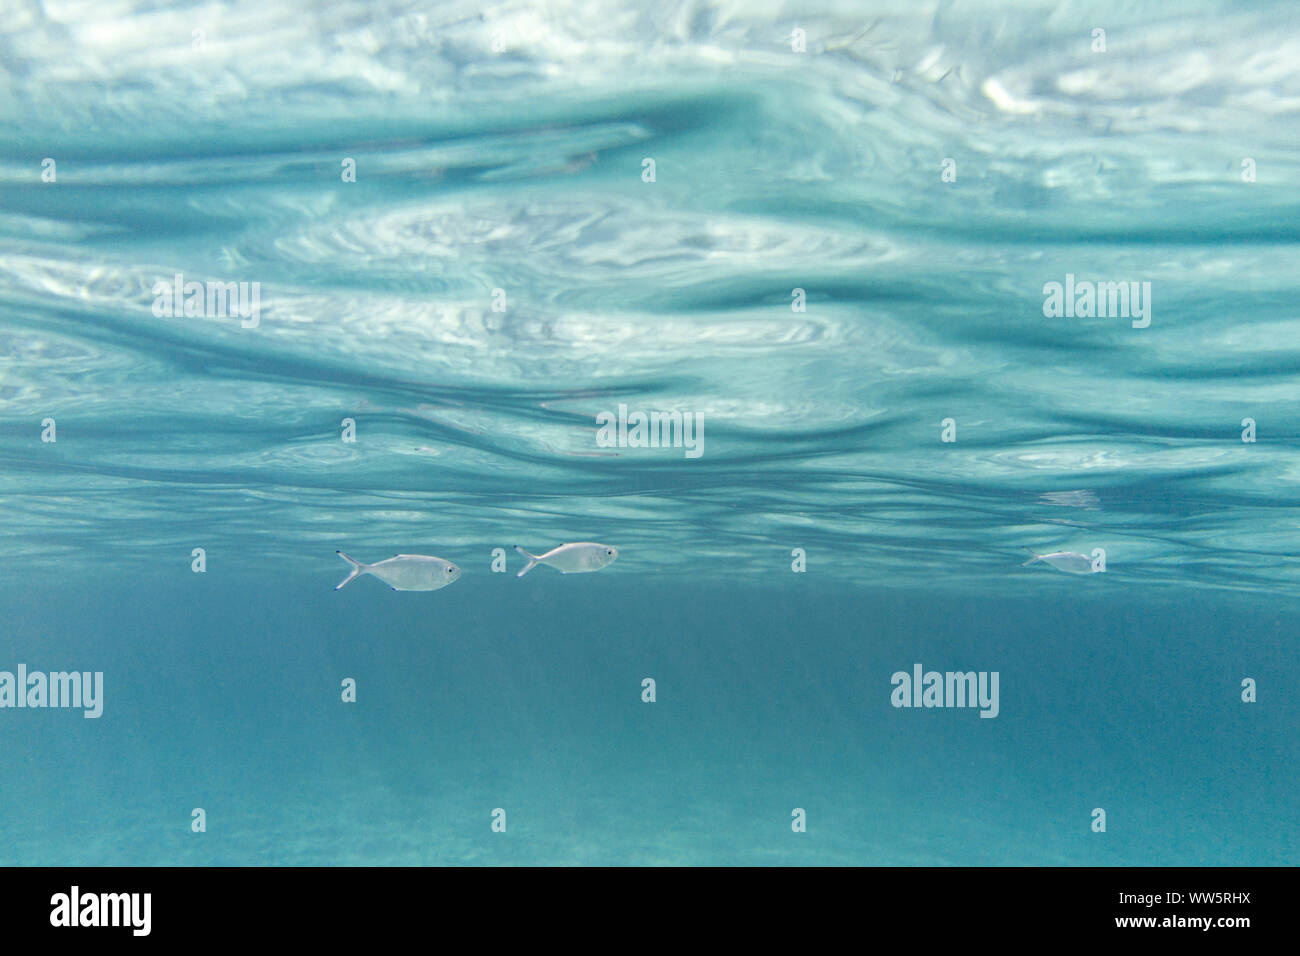 Underwater landscape around the Mediterranean island Formentera, Stock Photo